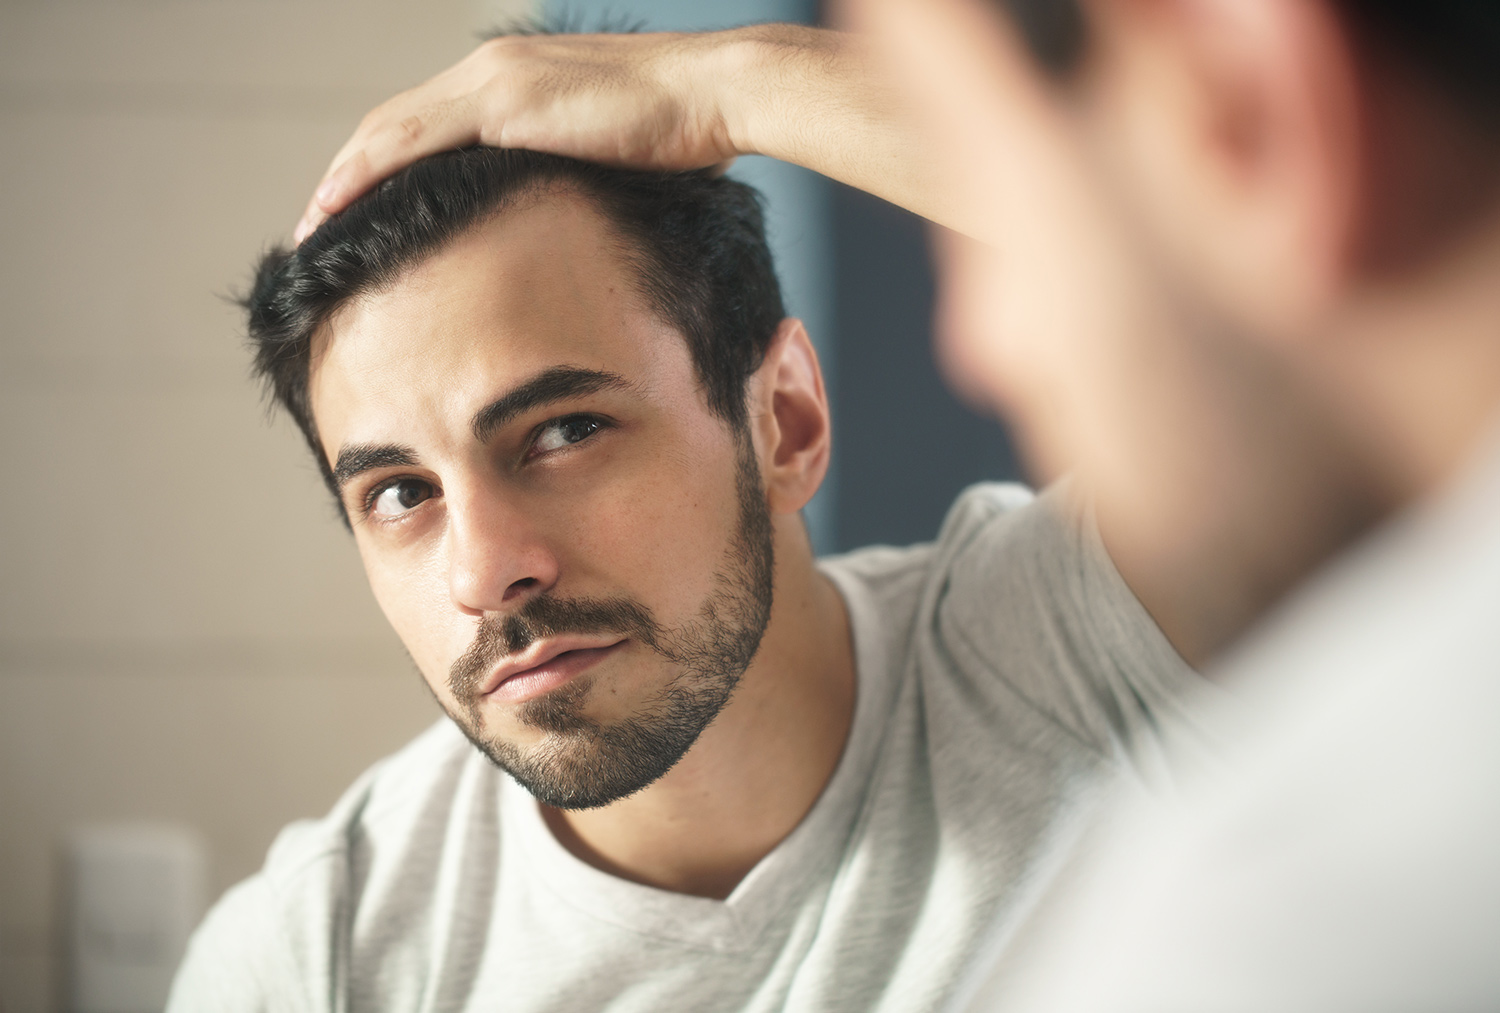 Treating Male Pattern Baldness